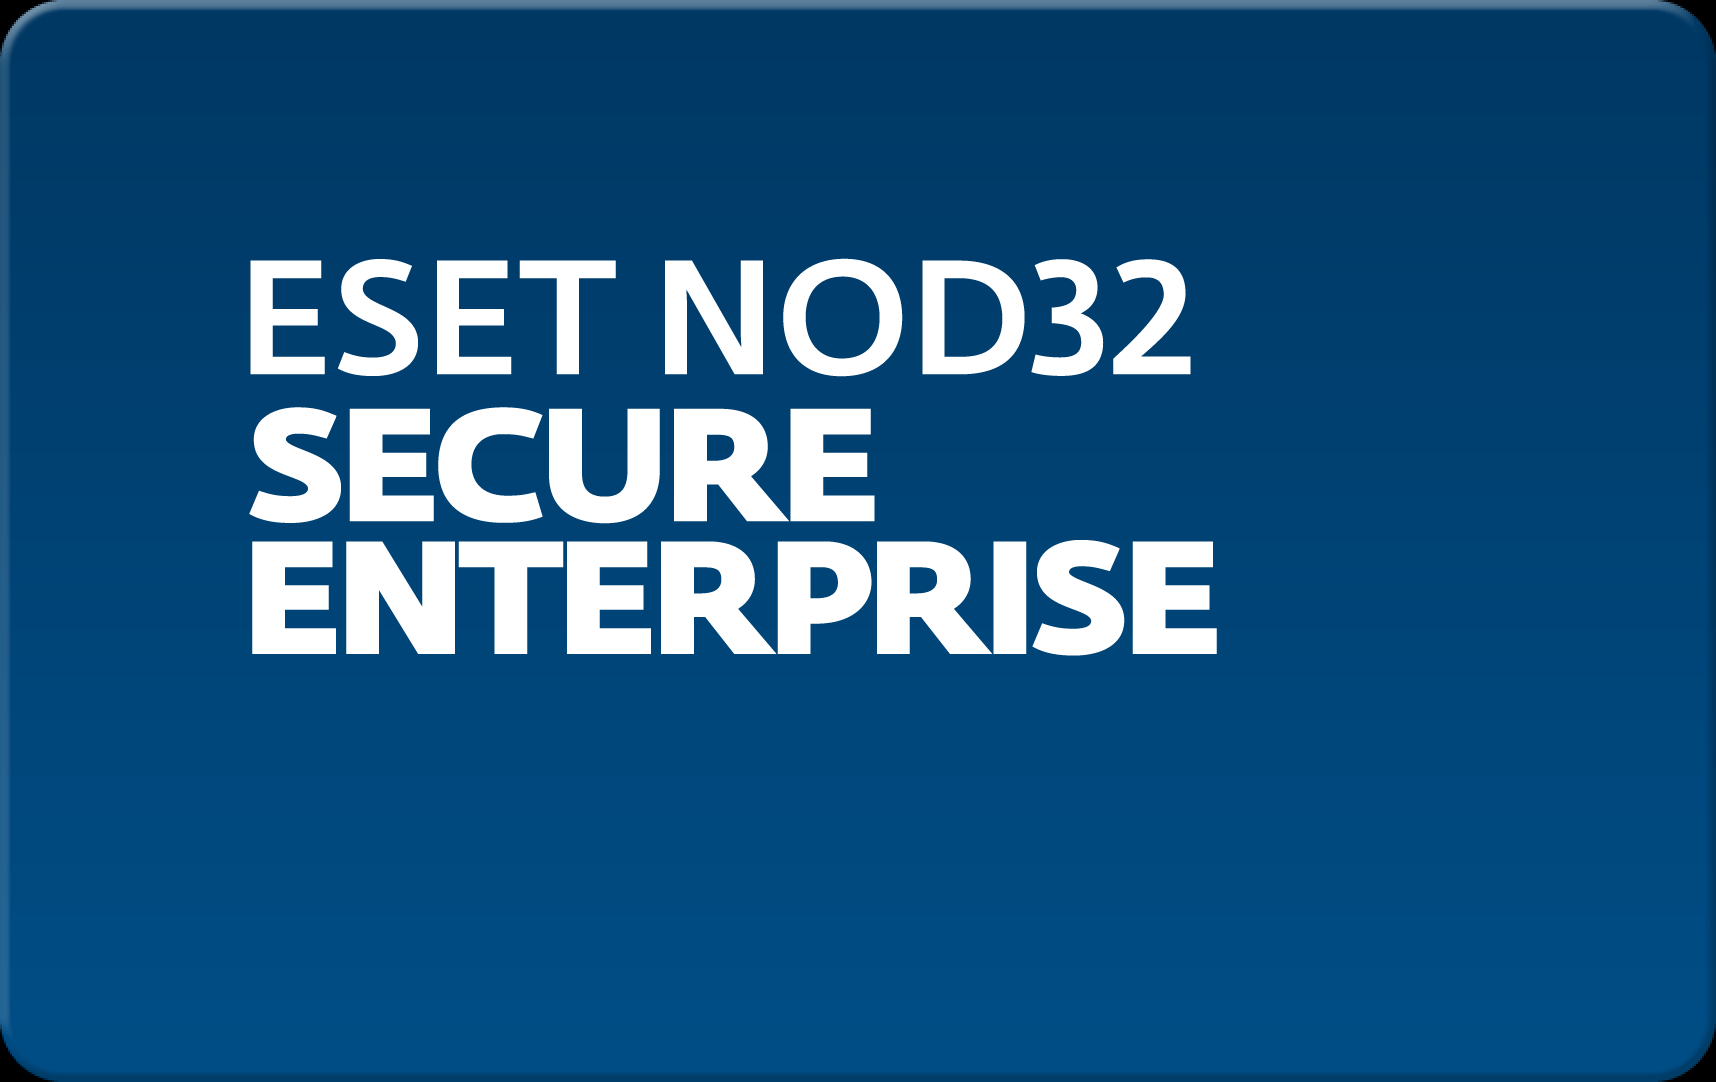        Eset NOD32 Secure Enterprise  145 